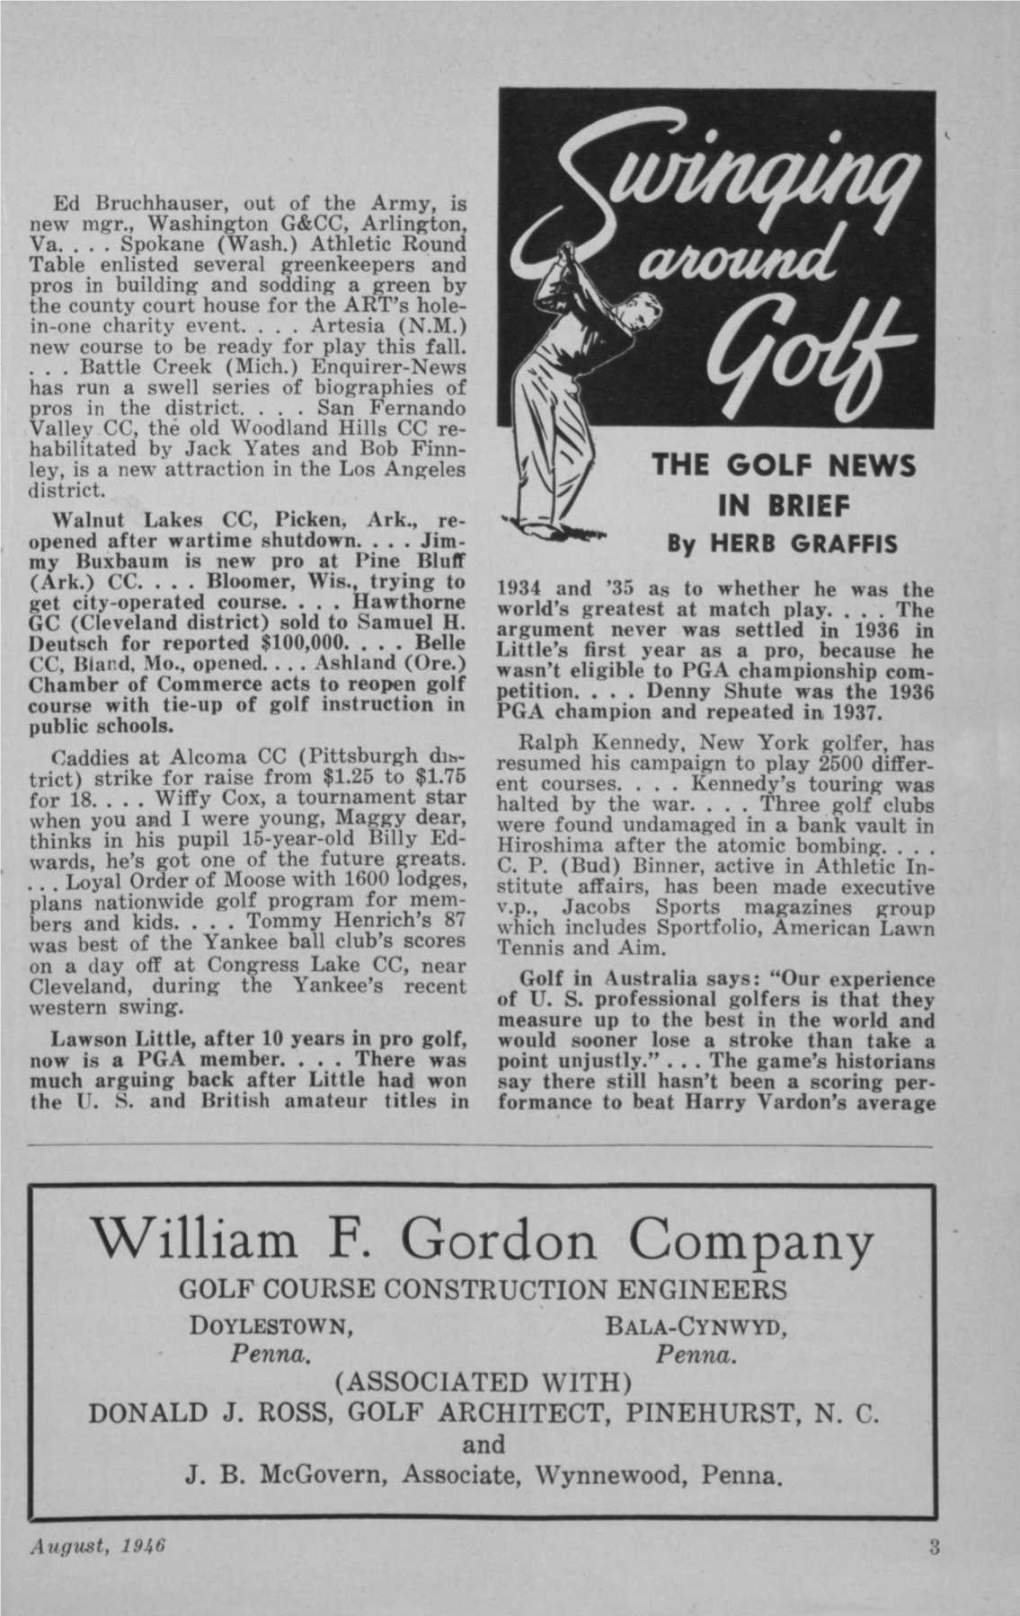 William F. Gordon Company GOLF COURSE CONSTRUCTION ENGINEERS DOYLESTOWN, BALA-CYNWYD, Penna